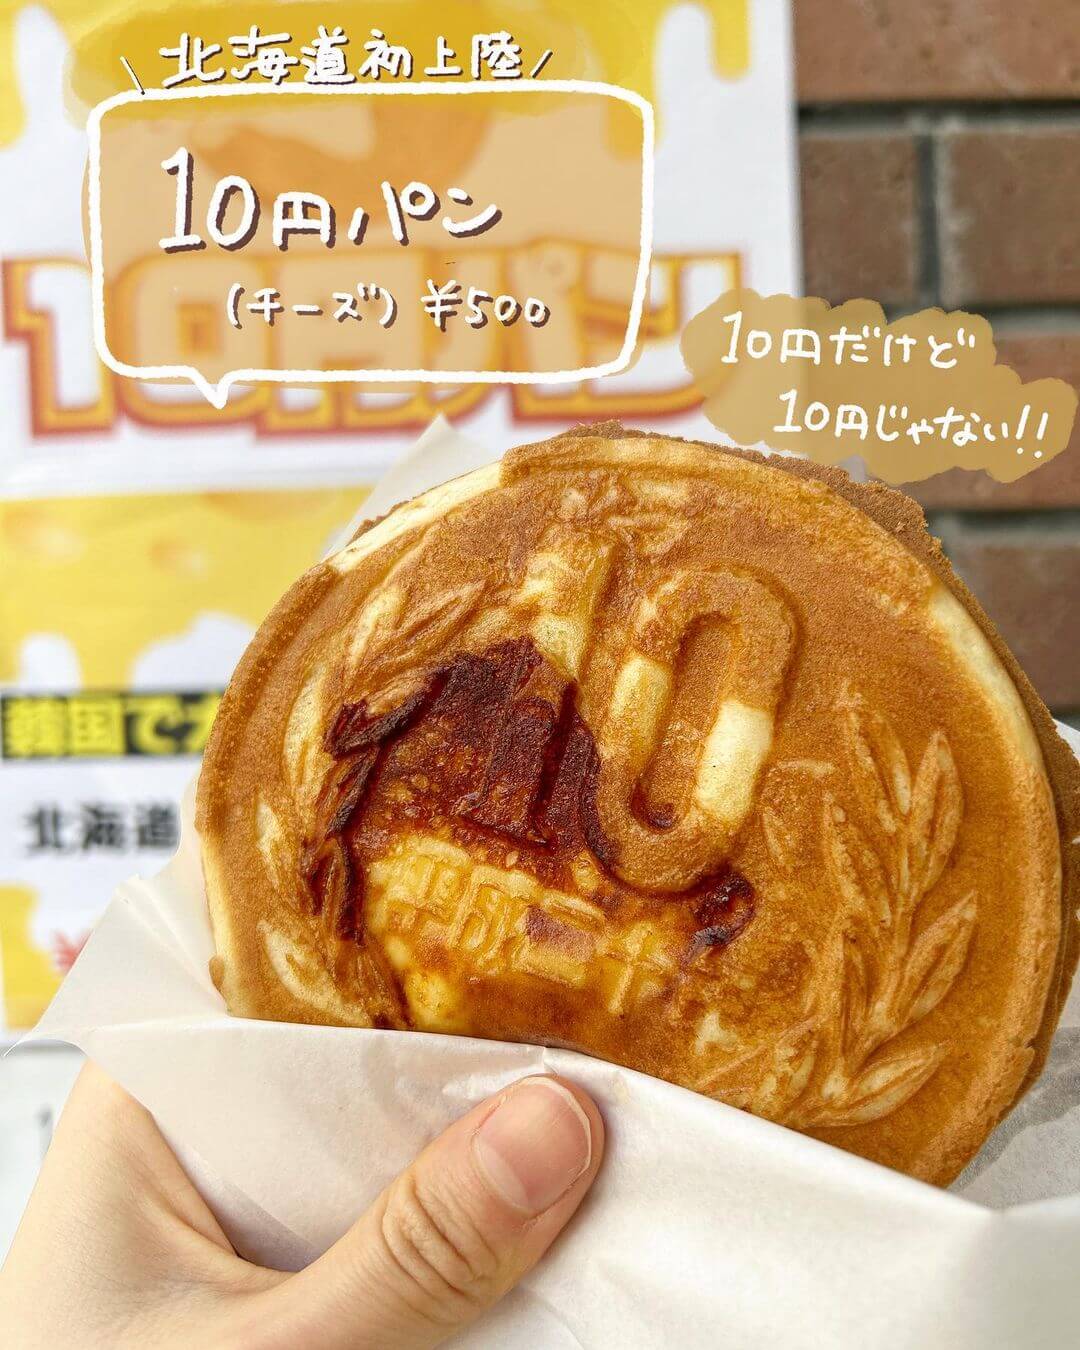 10円パン 札幌